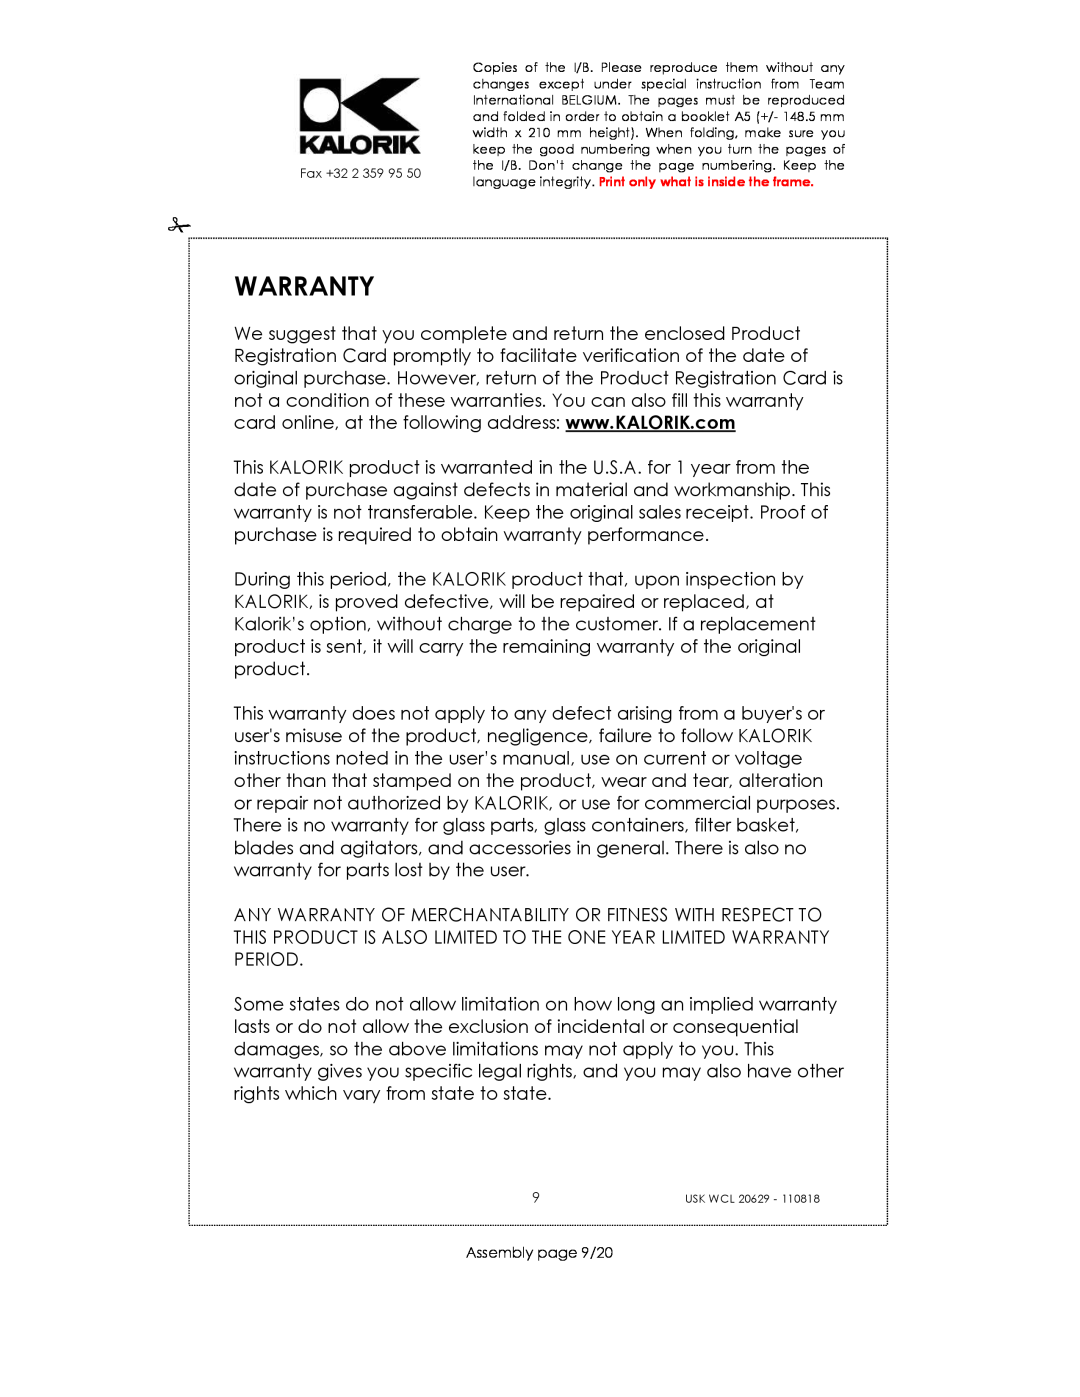 Kalorik USK WCL 20629 manual Warranty, Assembly page 9/20 